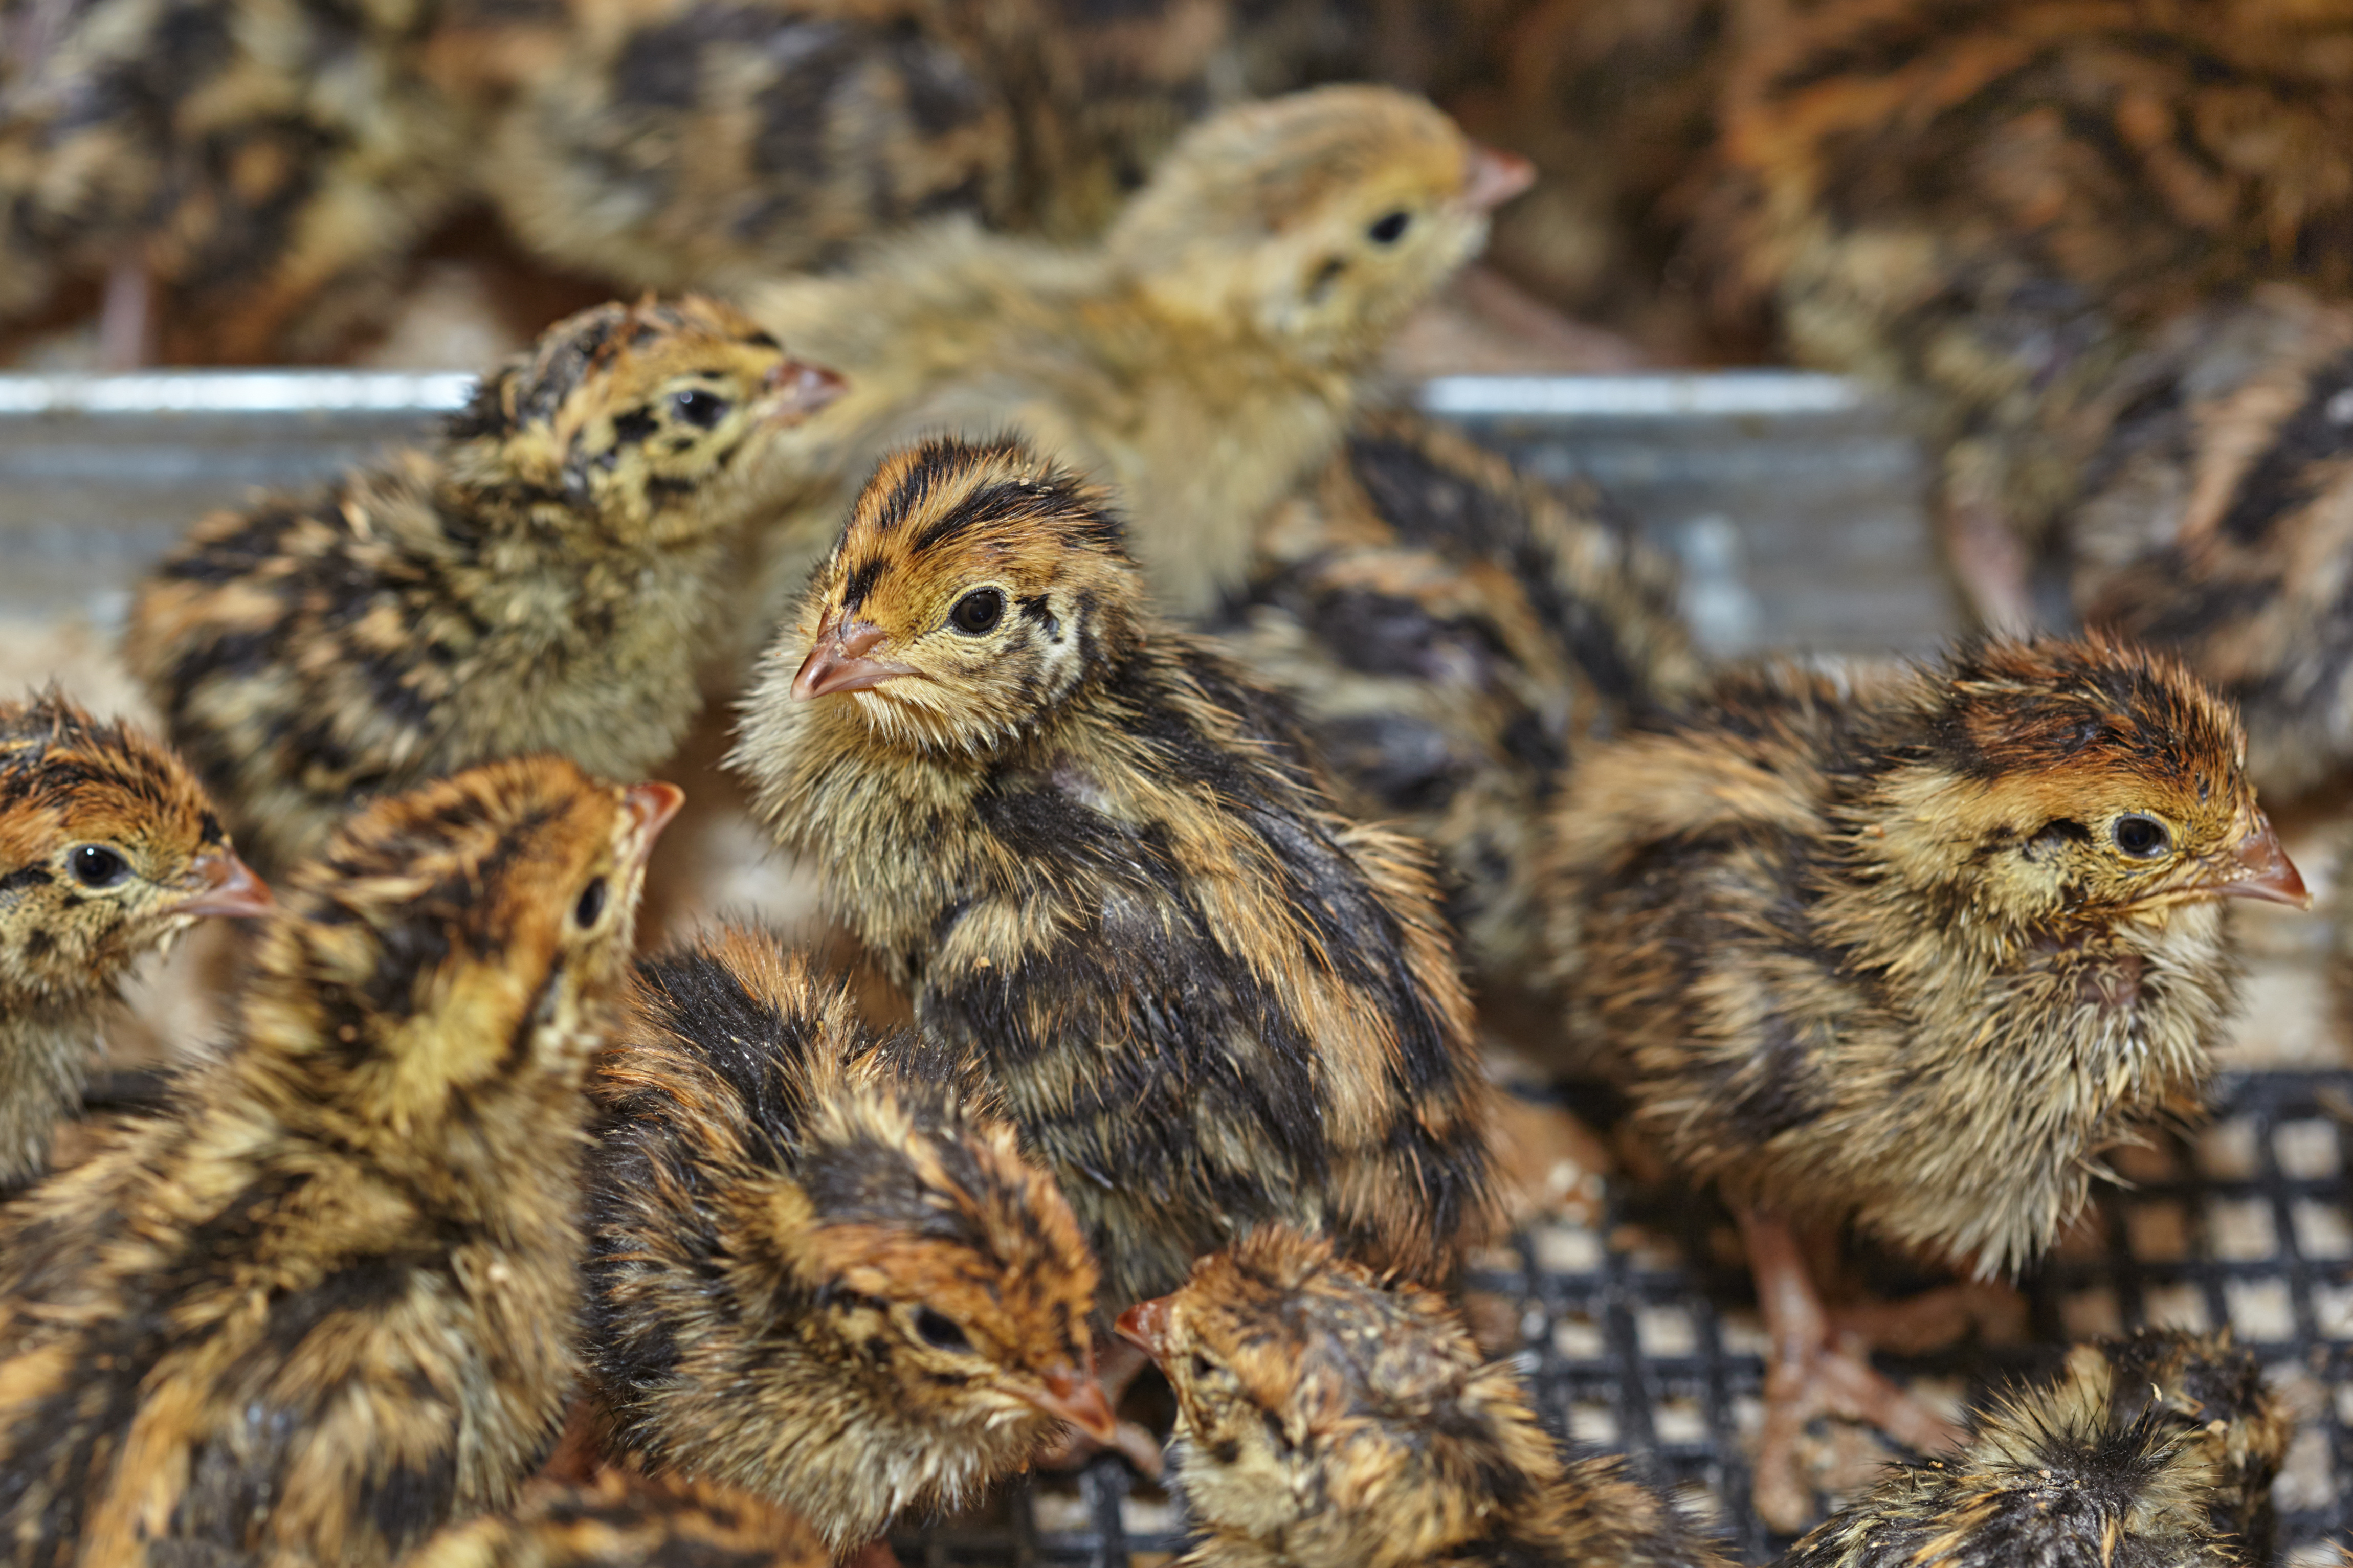 quail chicks